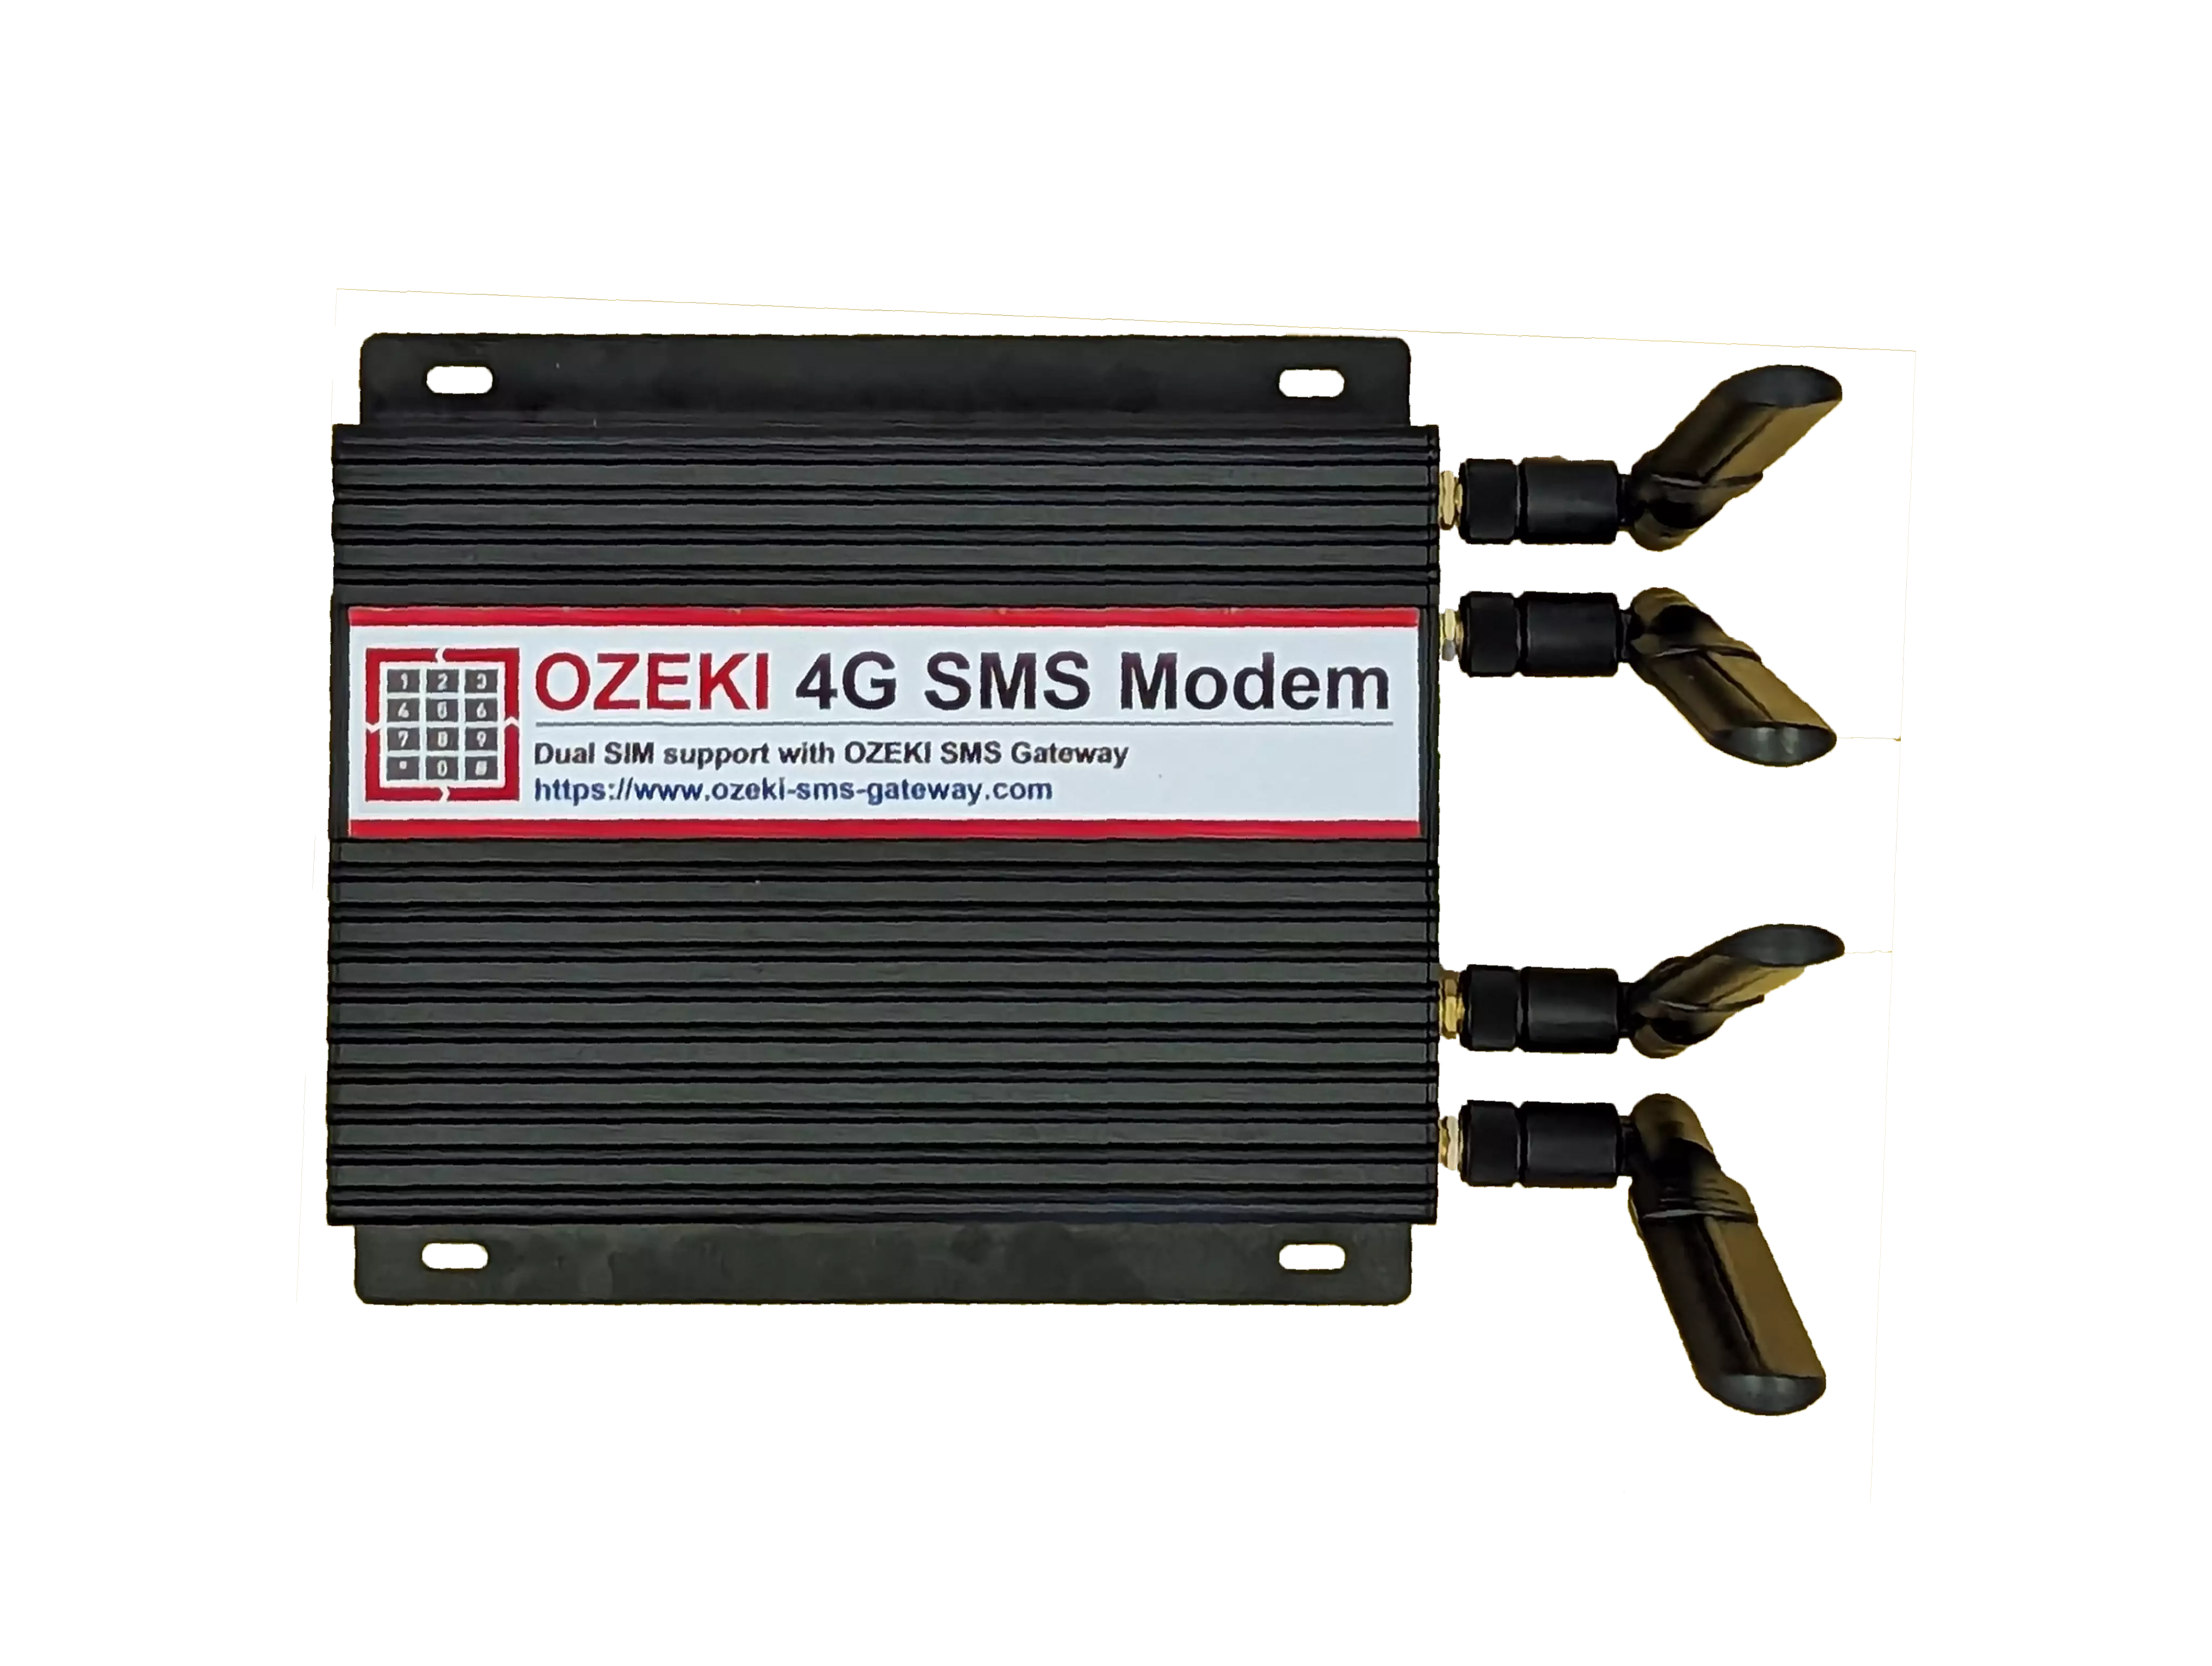 ozeki 4g lte sms dual sim modem photo